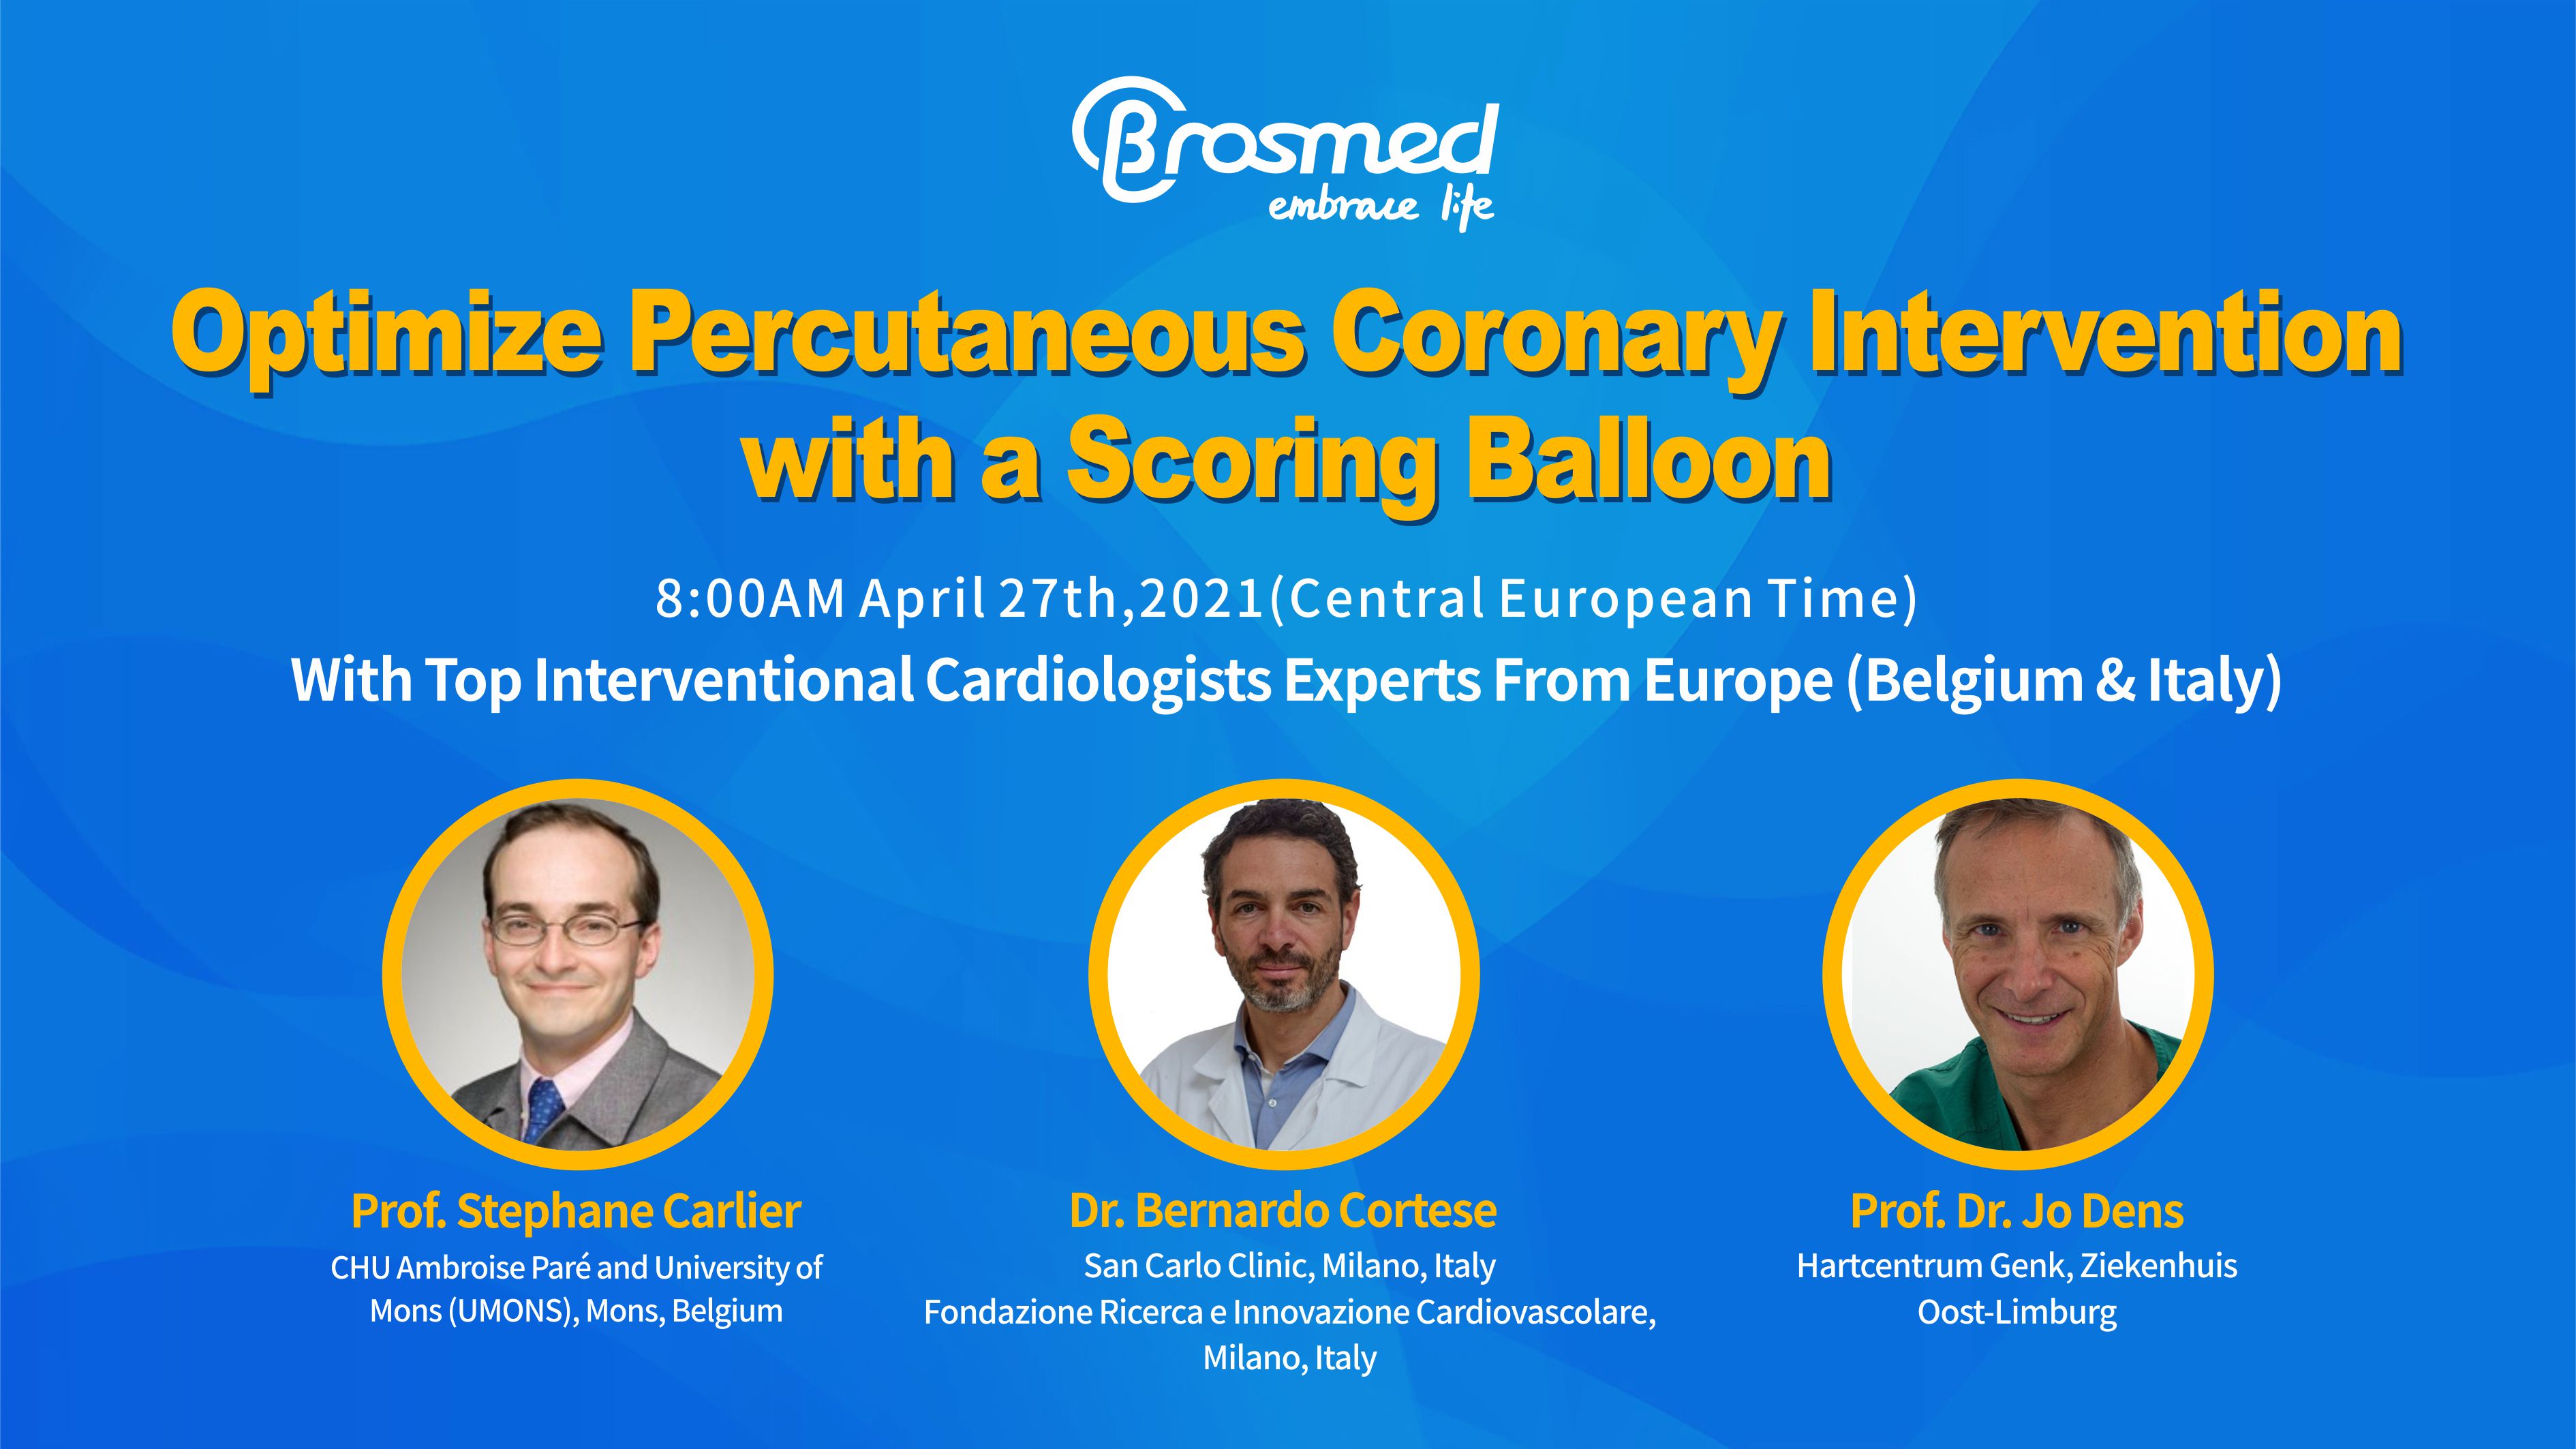 Webinar Announcement: Optimize Percutaneous Coronary Intervention with a Scoring Balloon